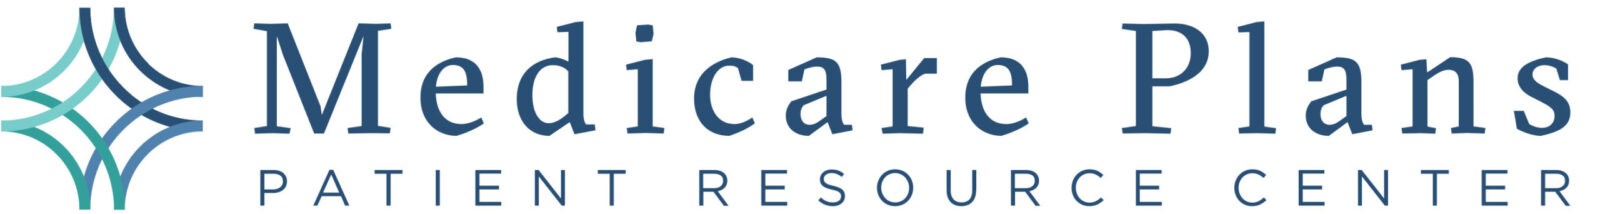 Medicare Plans Patient Resource Center logo